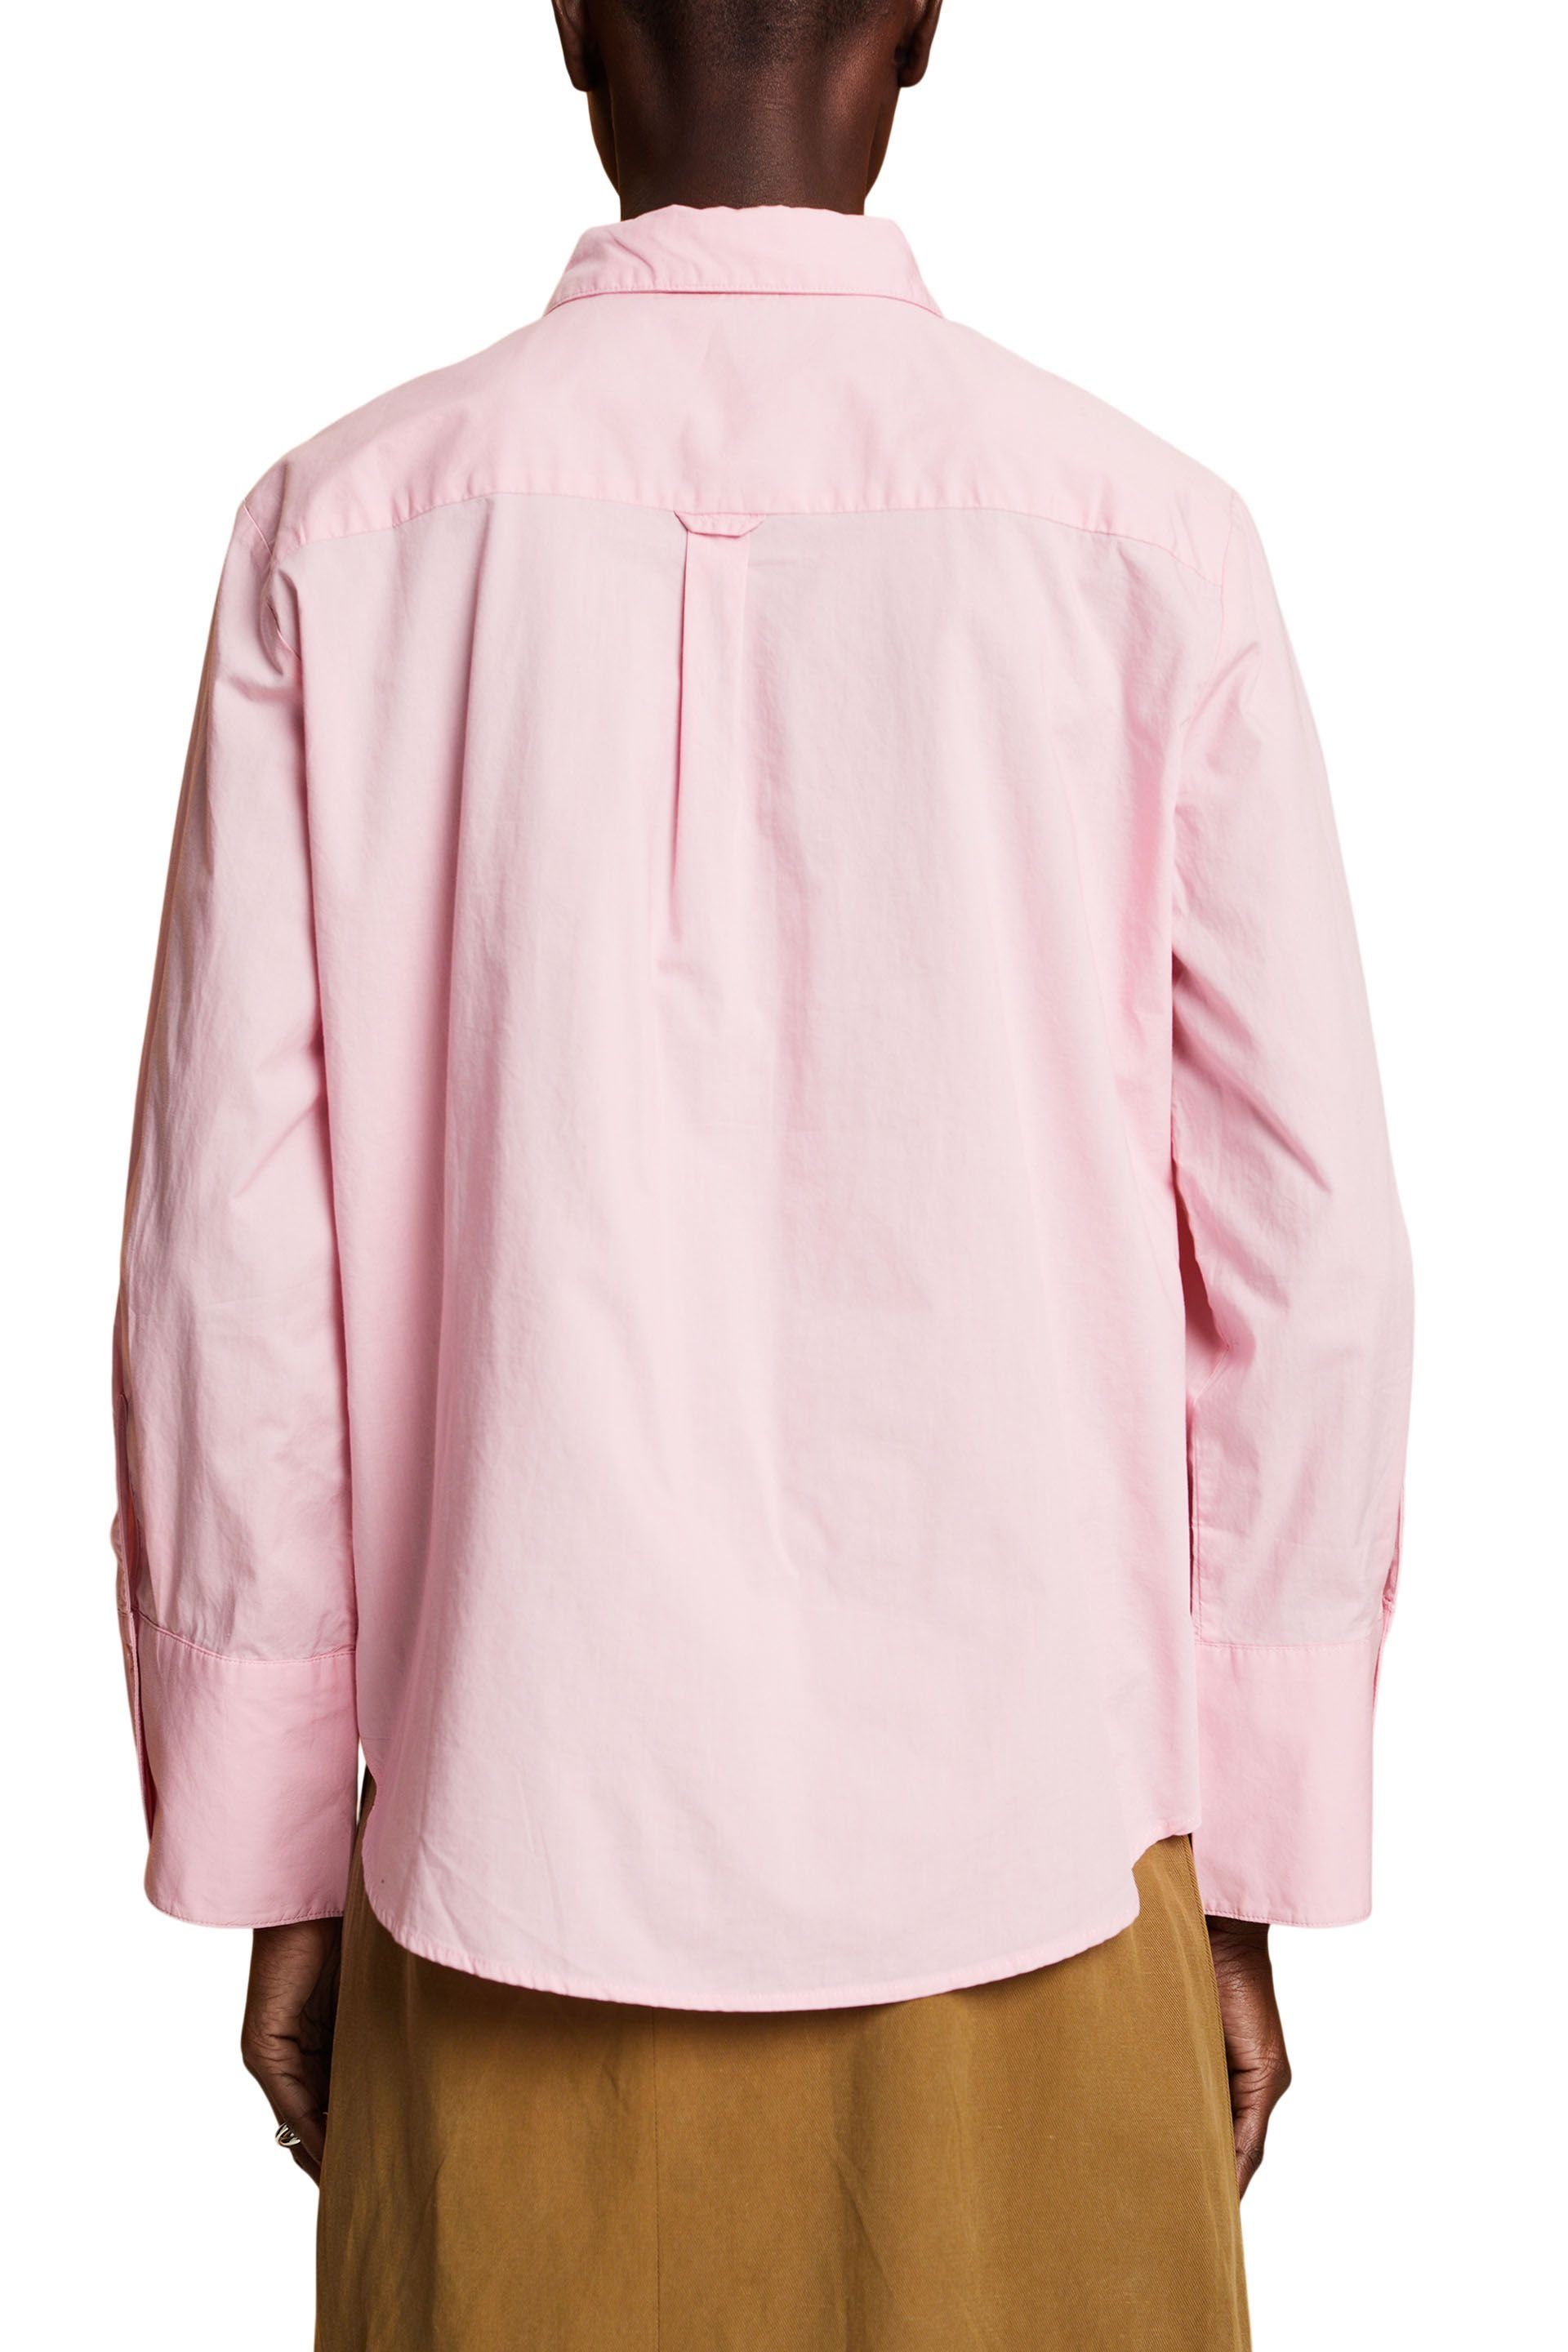 Langarmhemd light Esprit pink